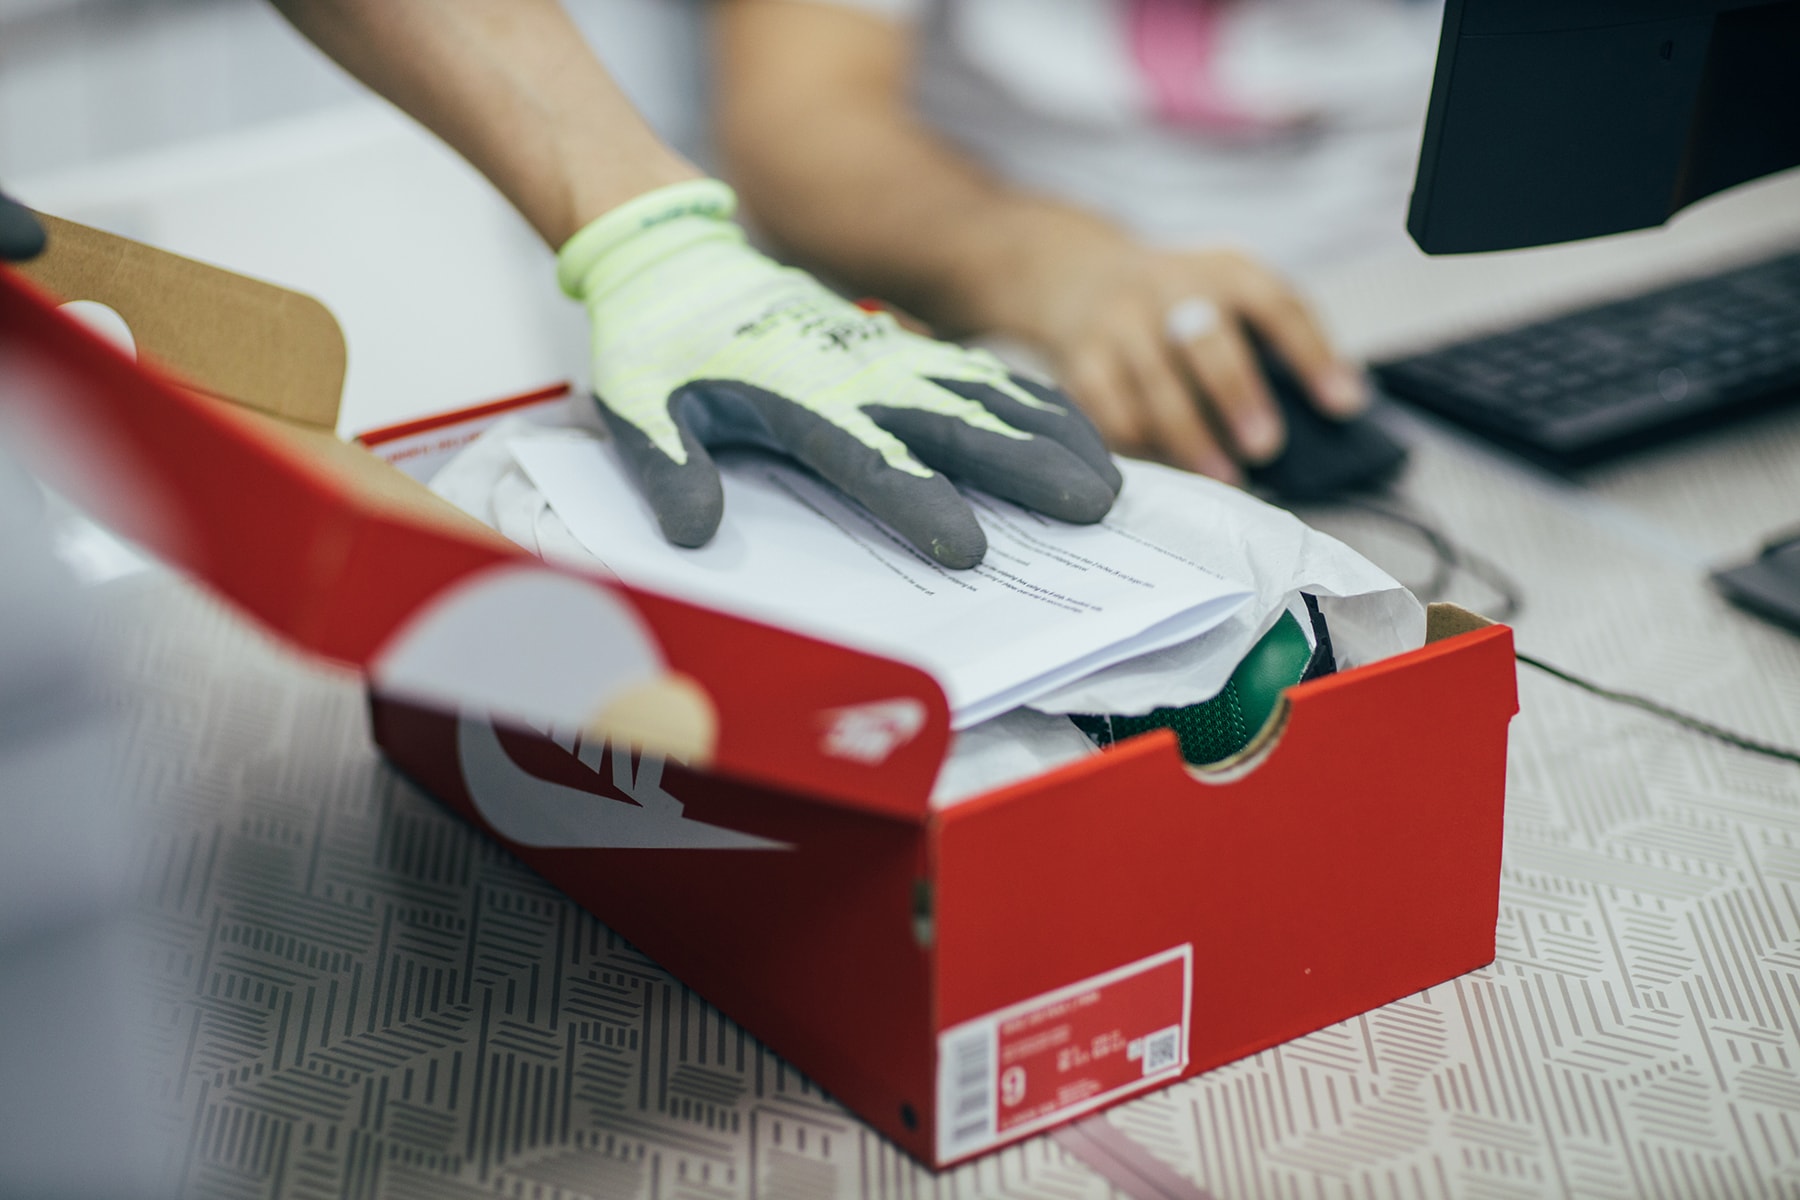 球鞋轉售平台 StockX 正式於香港開設認證中心